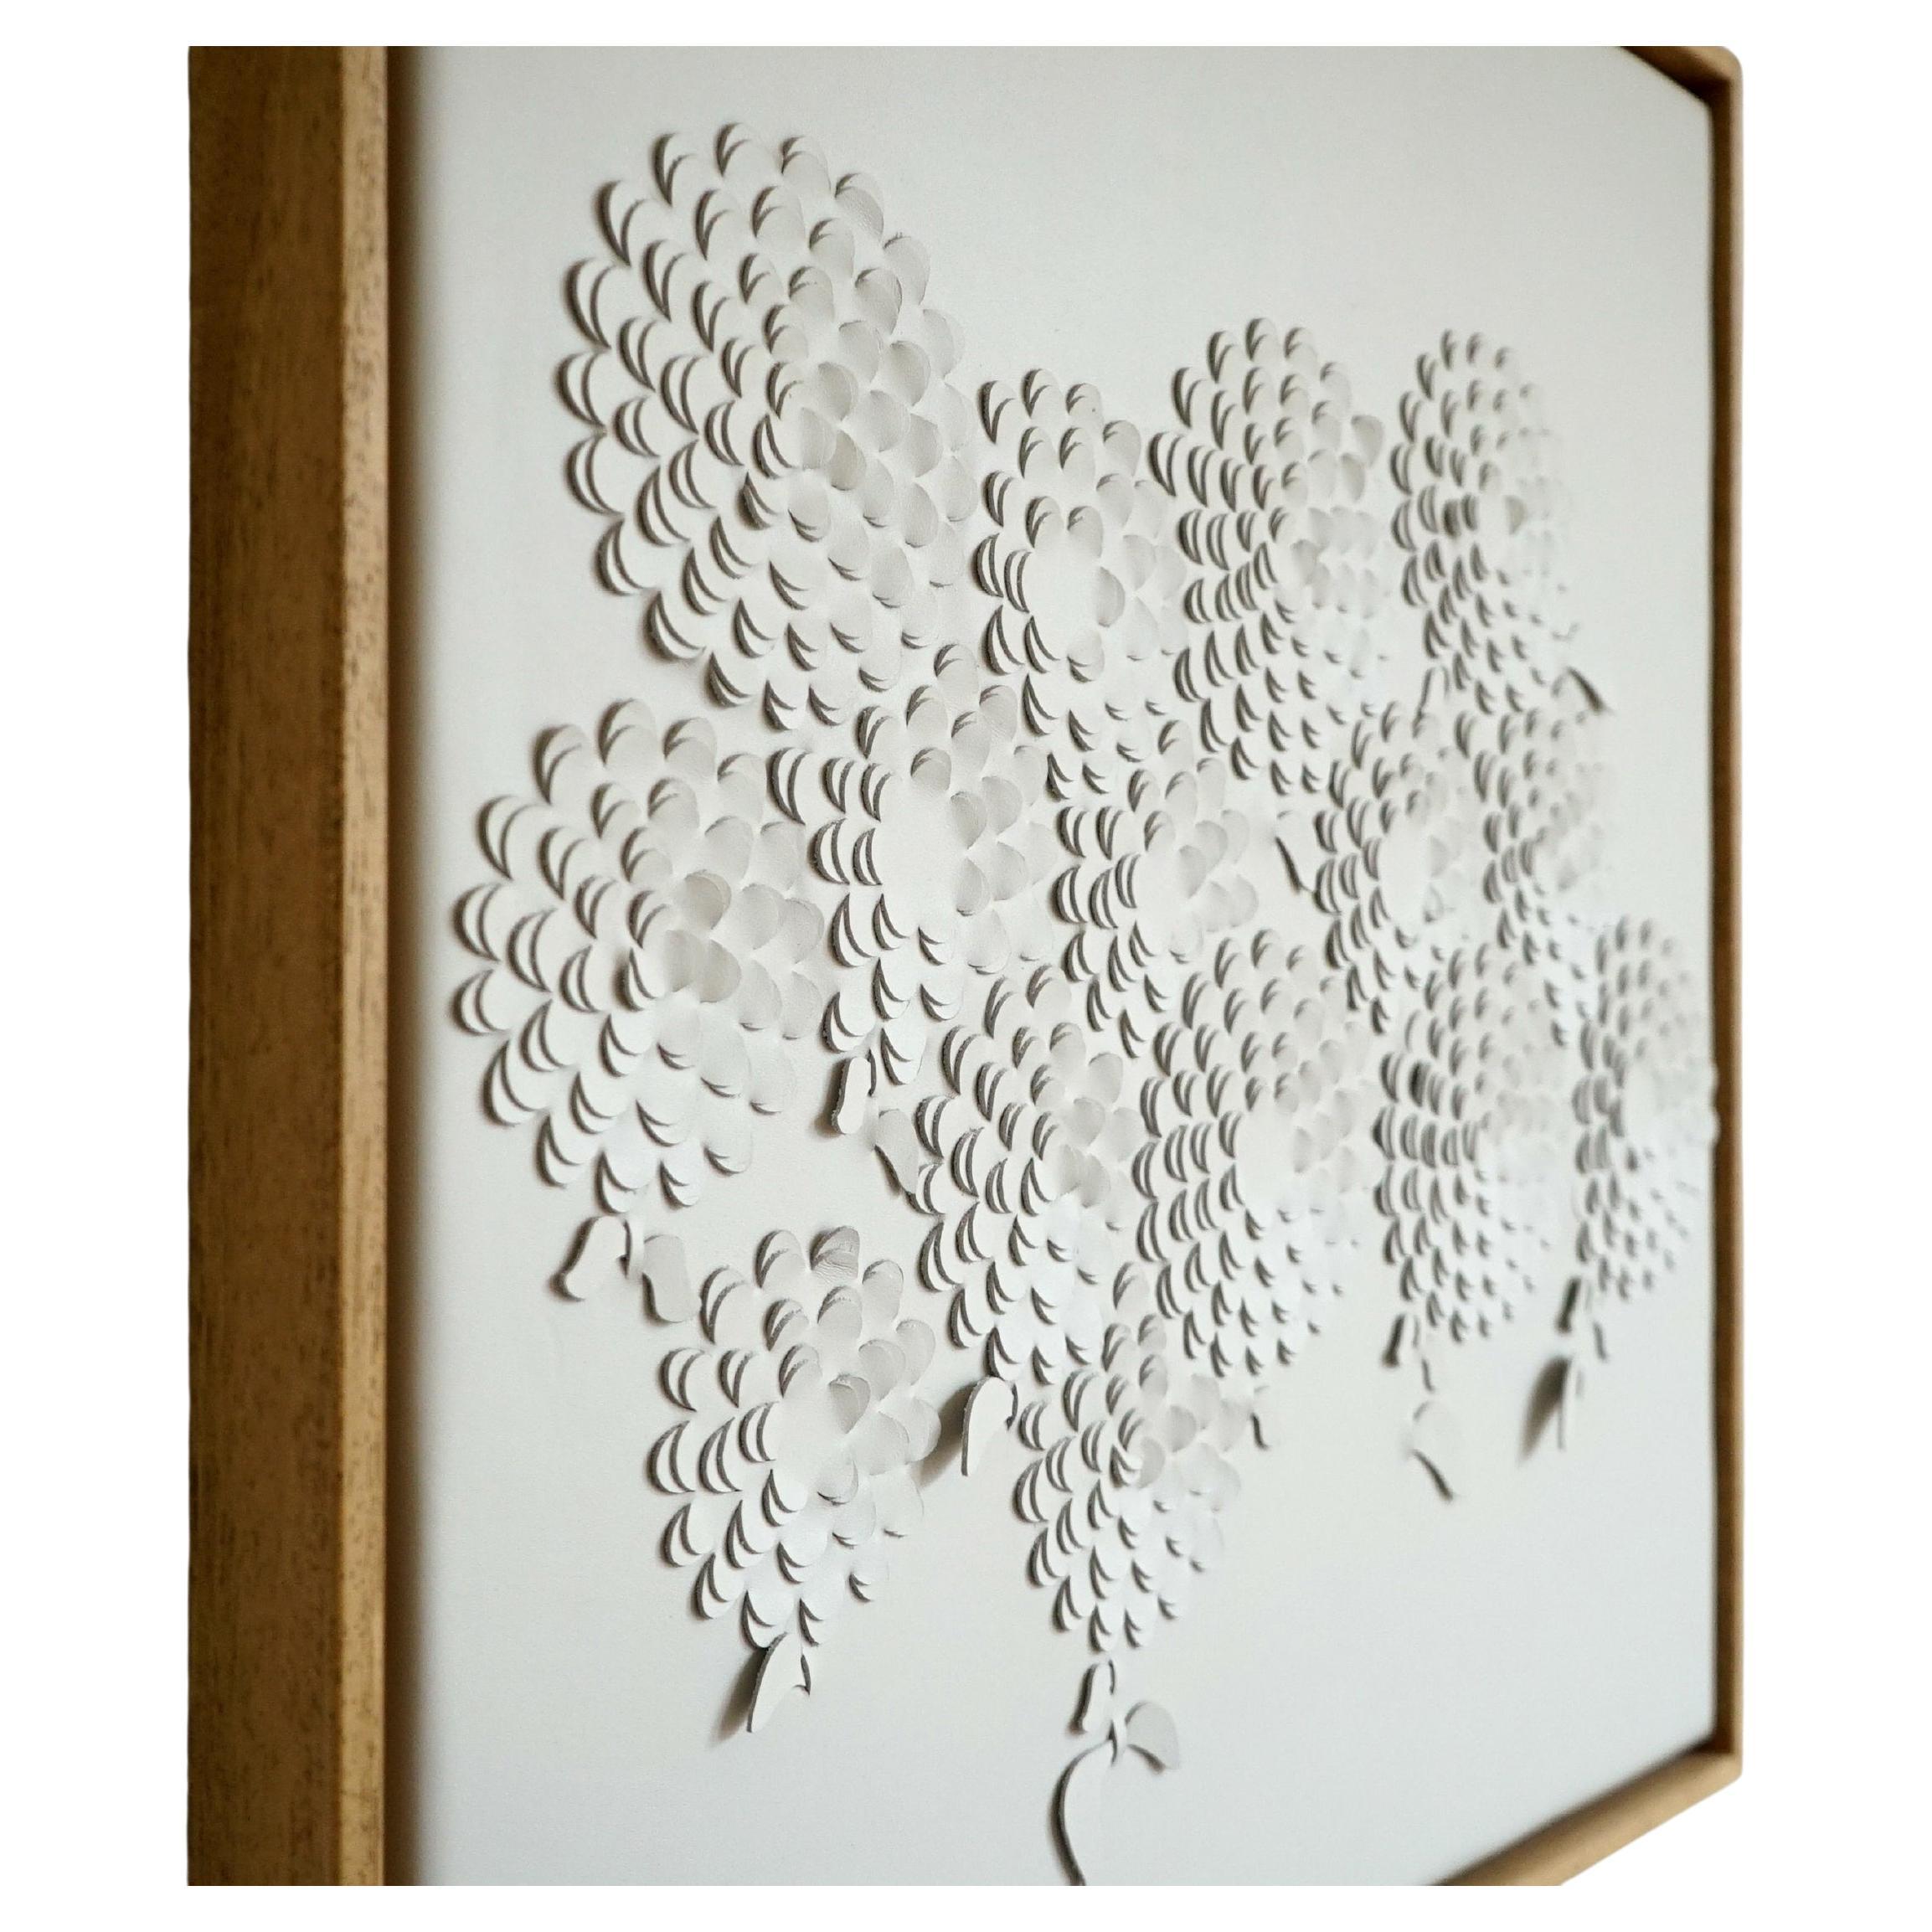 Chrysanthemum: A Piece of 3D Sculptural Cream Leather Wall Art